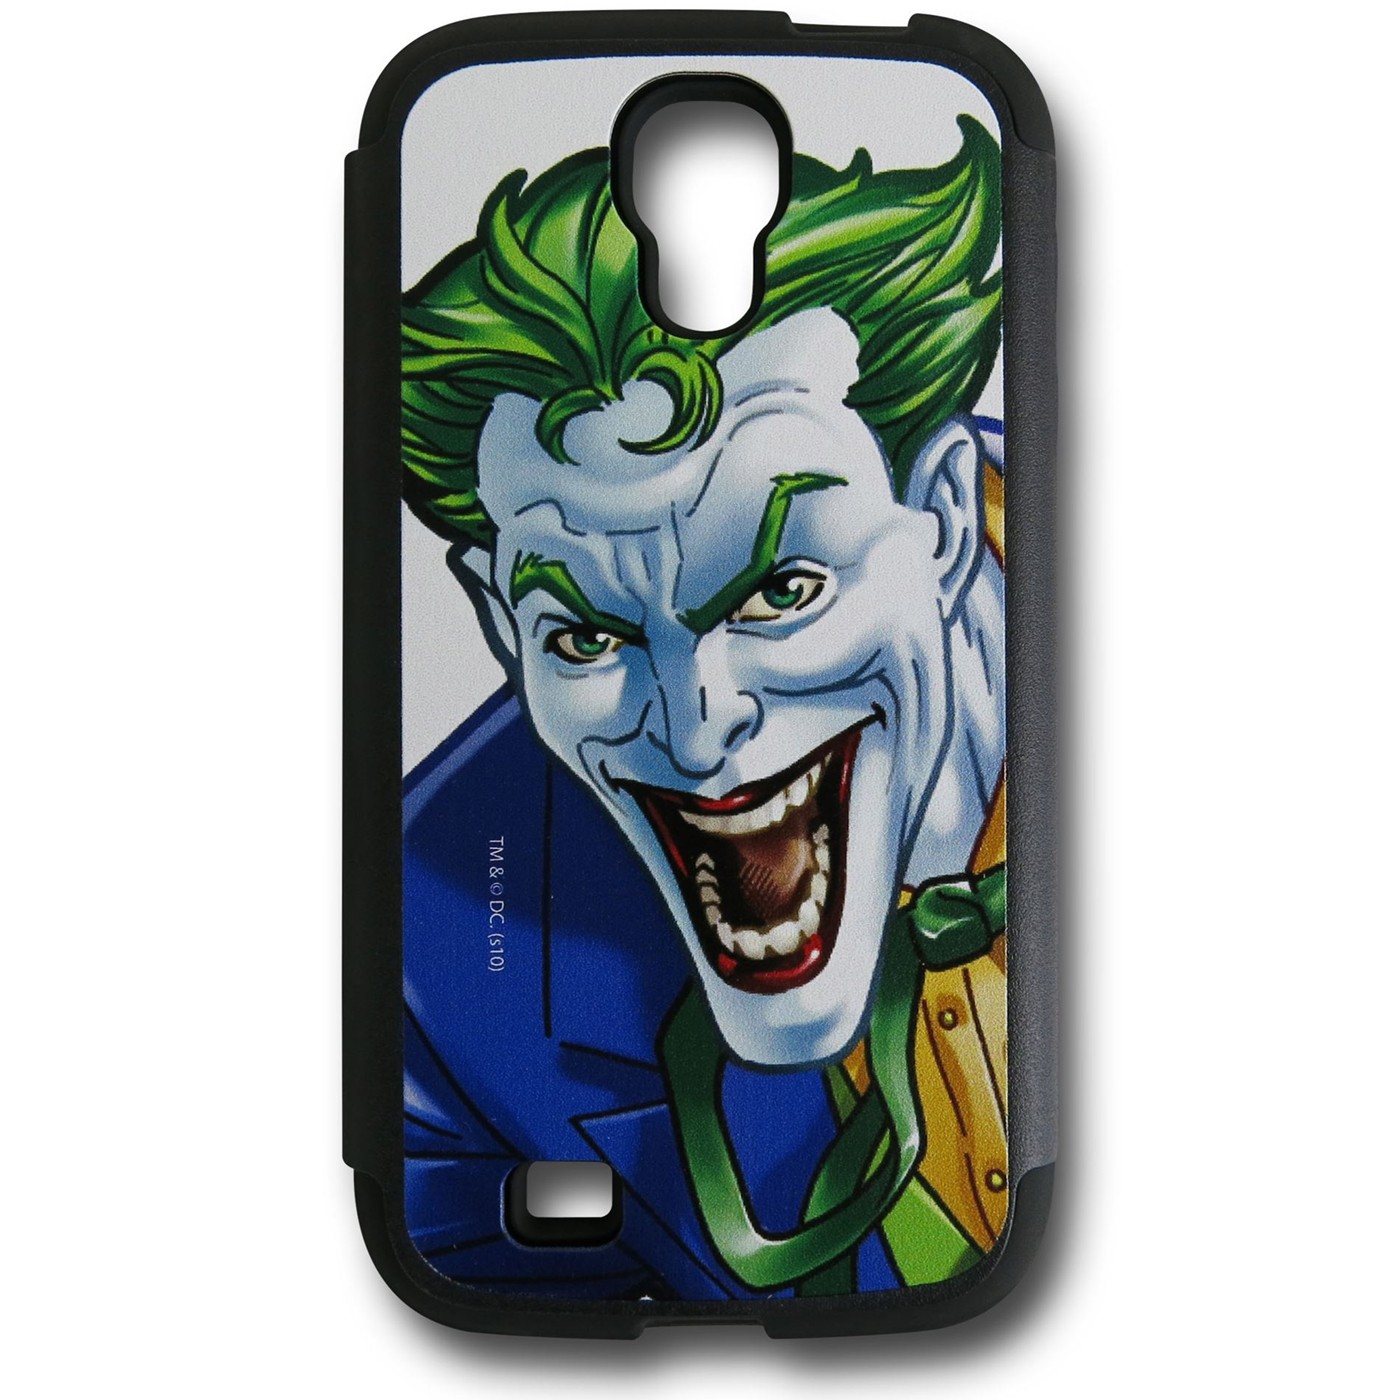 Joker Close-Up Galaxy S4 Guardian Case